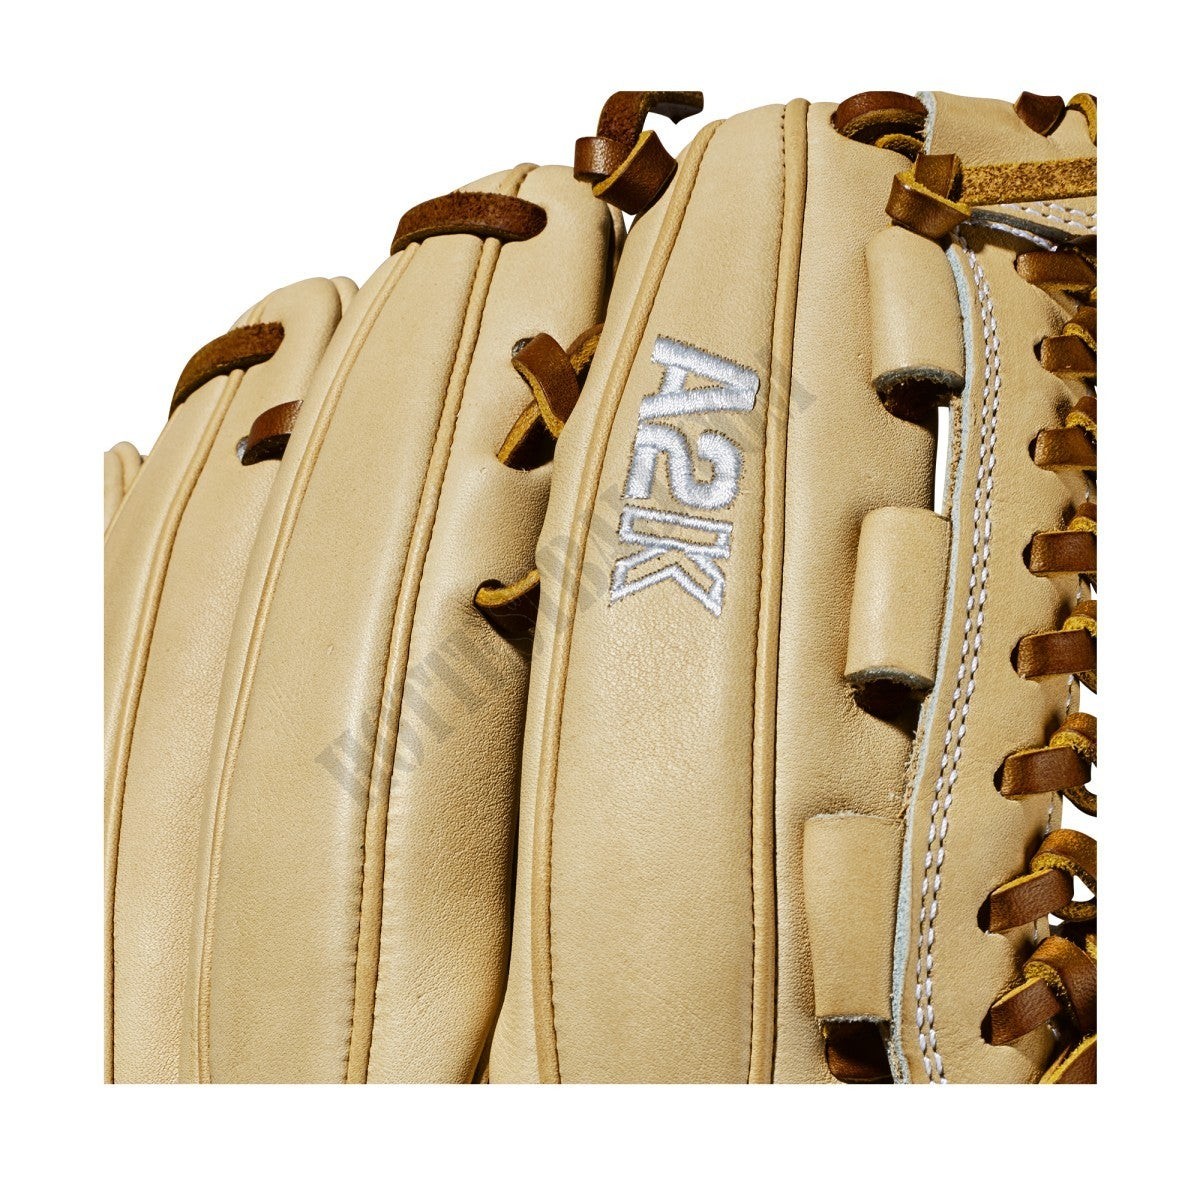 2020 A2K D33 11.75" Pitcher's Baseball Glove ● Wilson Promotions - -6